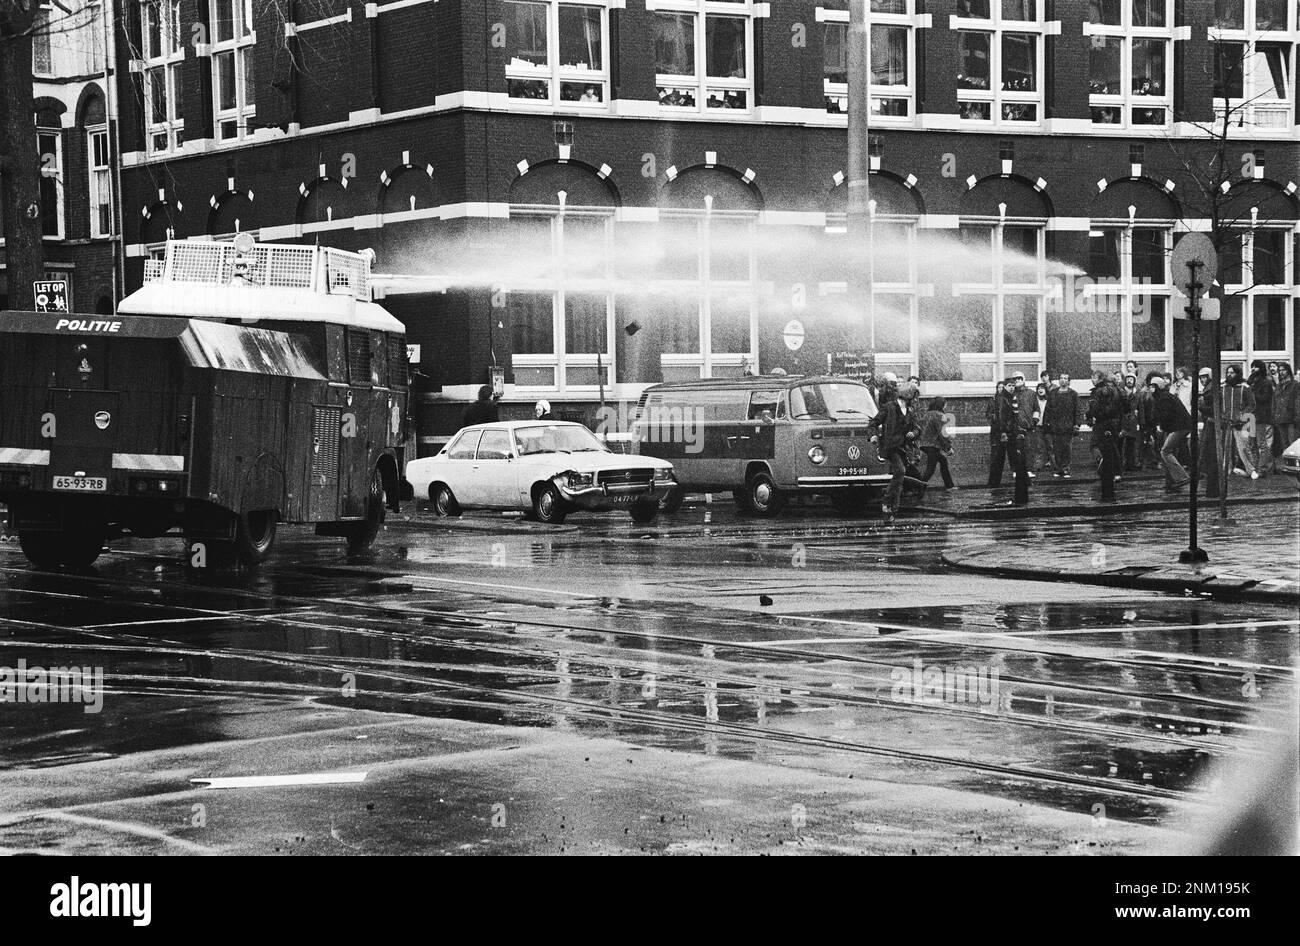 Niederländische Geschichte: Polizei und Armee mit gepanzerten Fahrzeugen und Panzern räumen Barrikaden in Vondelbuurt, Amsterdam; Wasserkanone (besetzte Unruhen) ca. 3. März 1980 Stockfoto